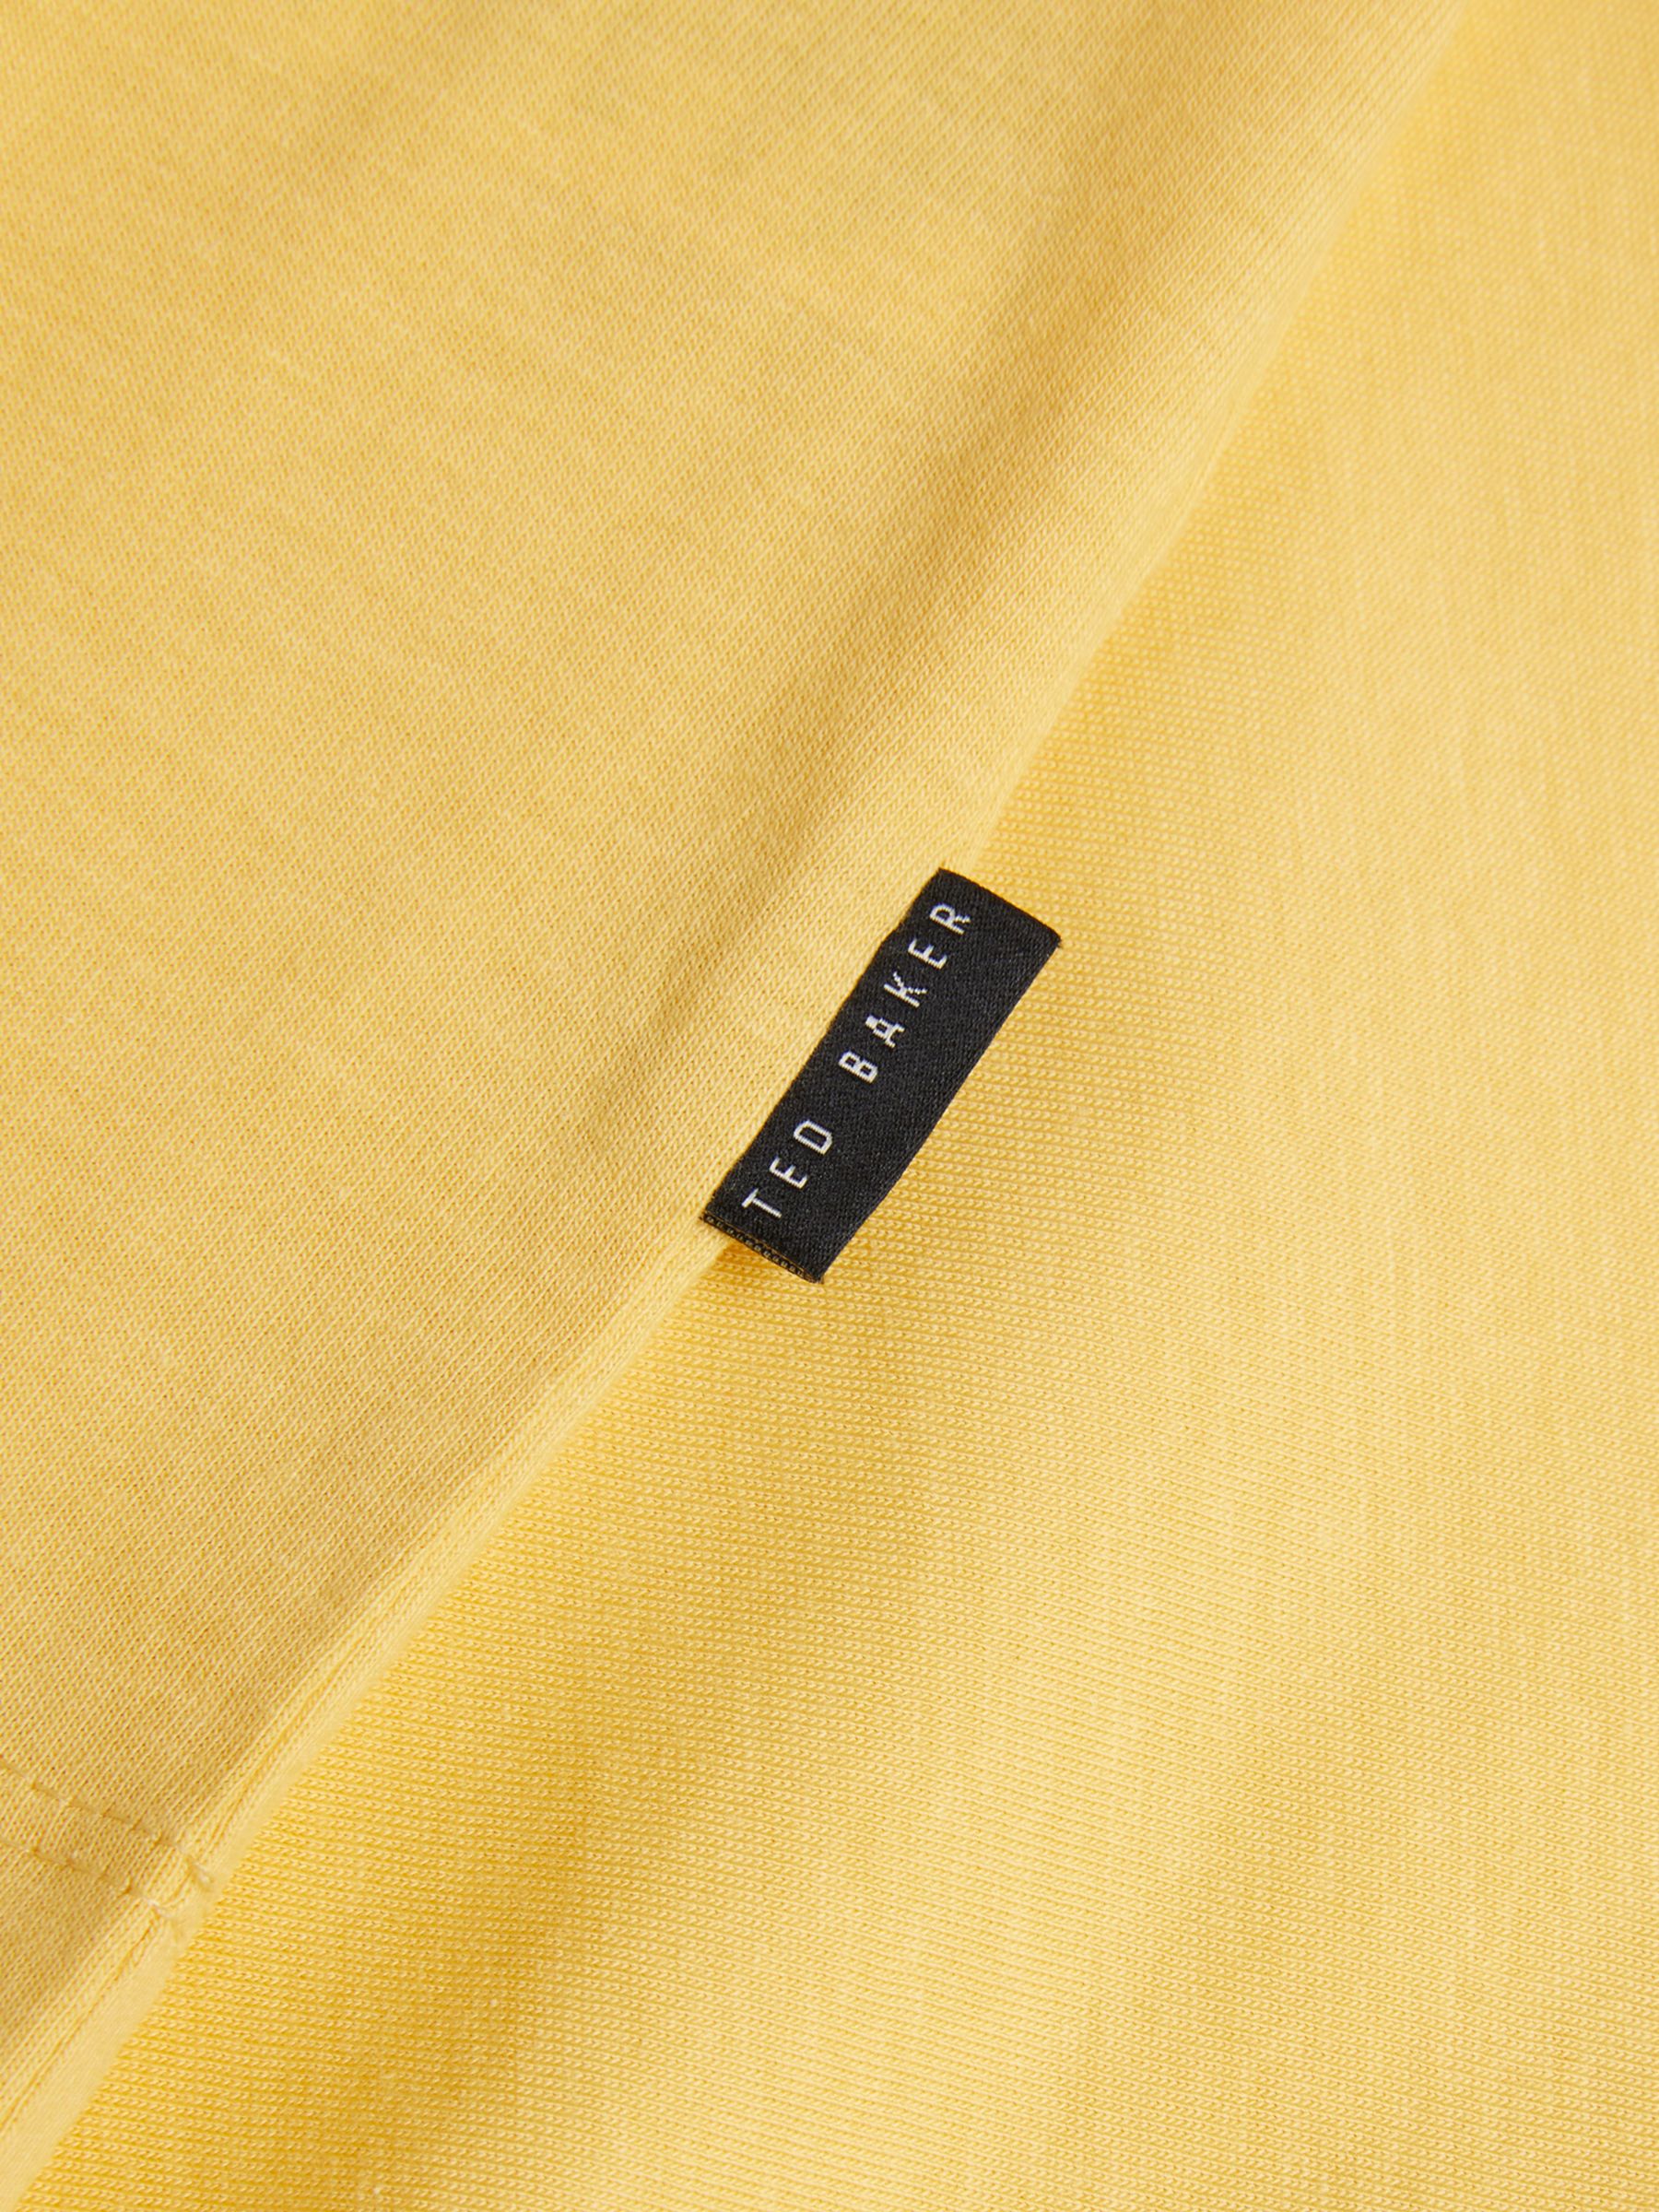 Ted Baker Tywinn Cotton T-Shirt, Yellow, S